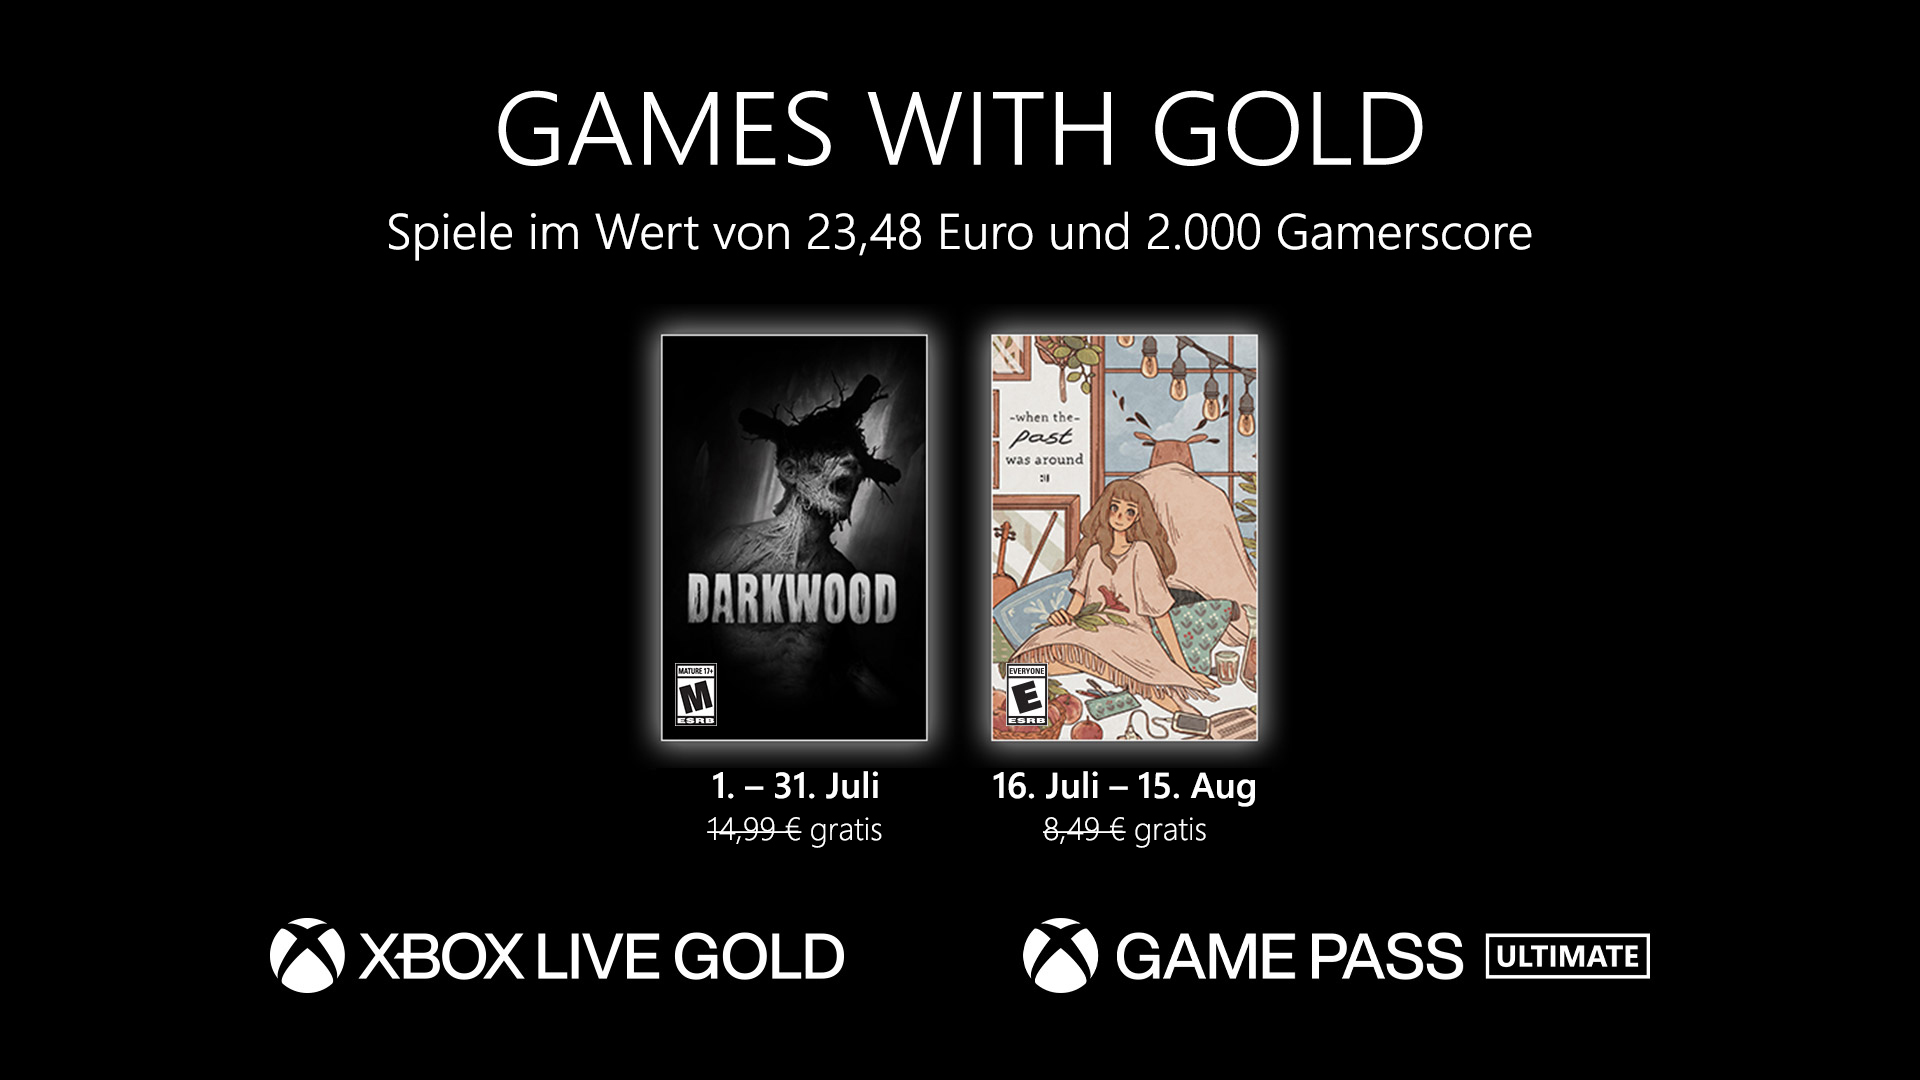 Games with Gold: Diese Spiele gibt es im Juni gratis